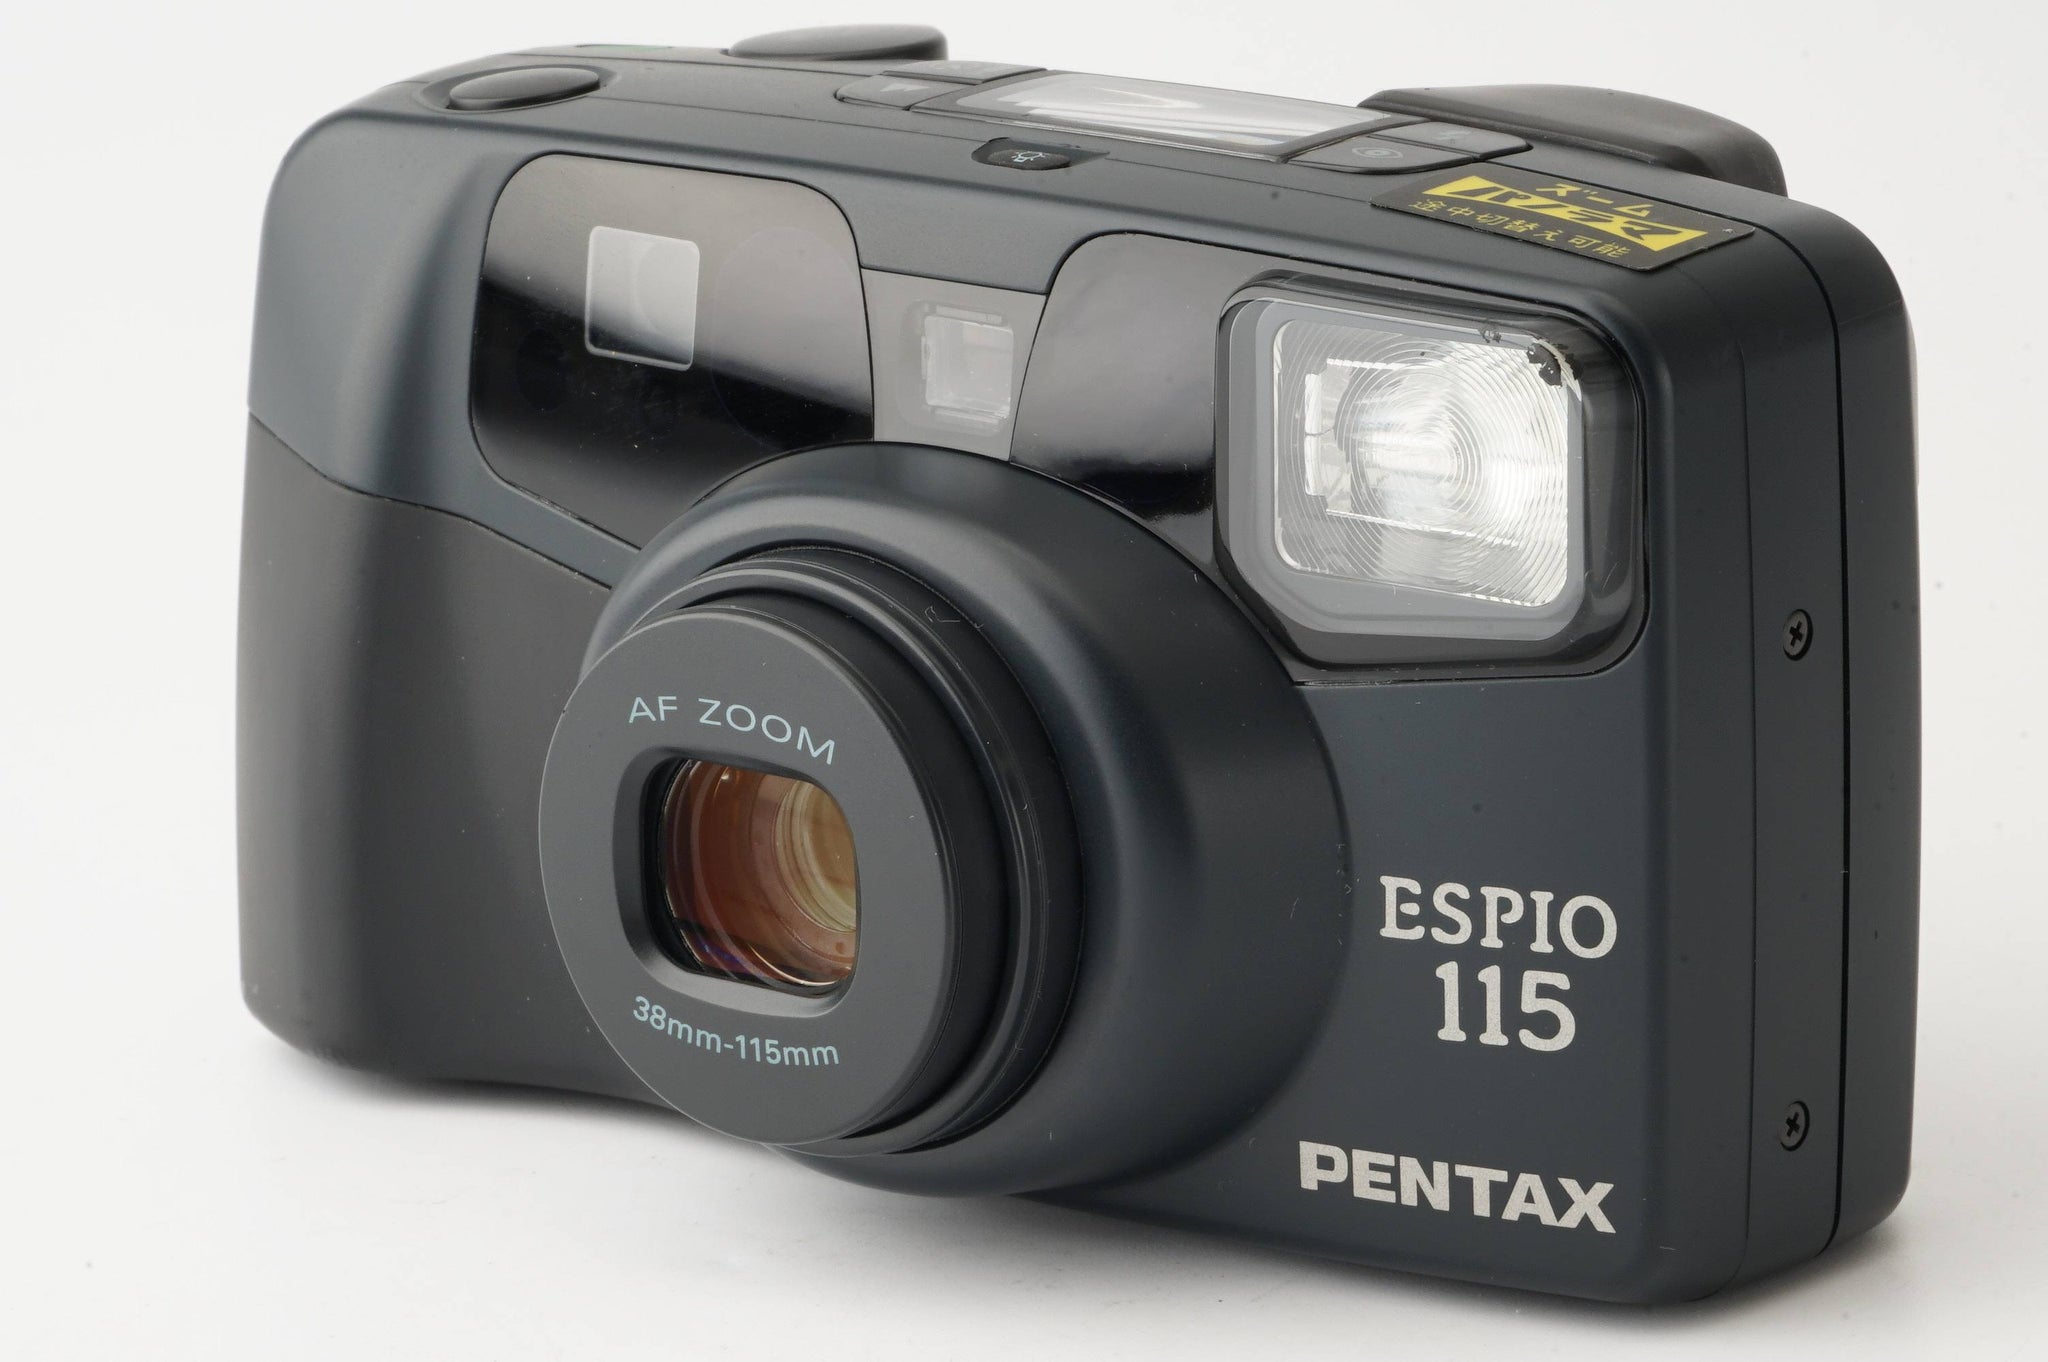 ペンタックス Pentax ESPIO 115 / ZOOM 38-115mm – Natural Camera